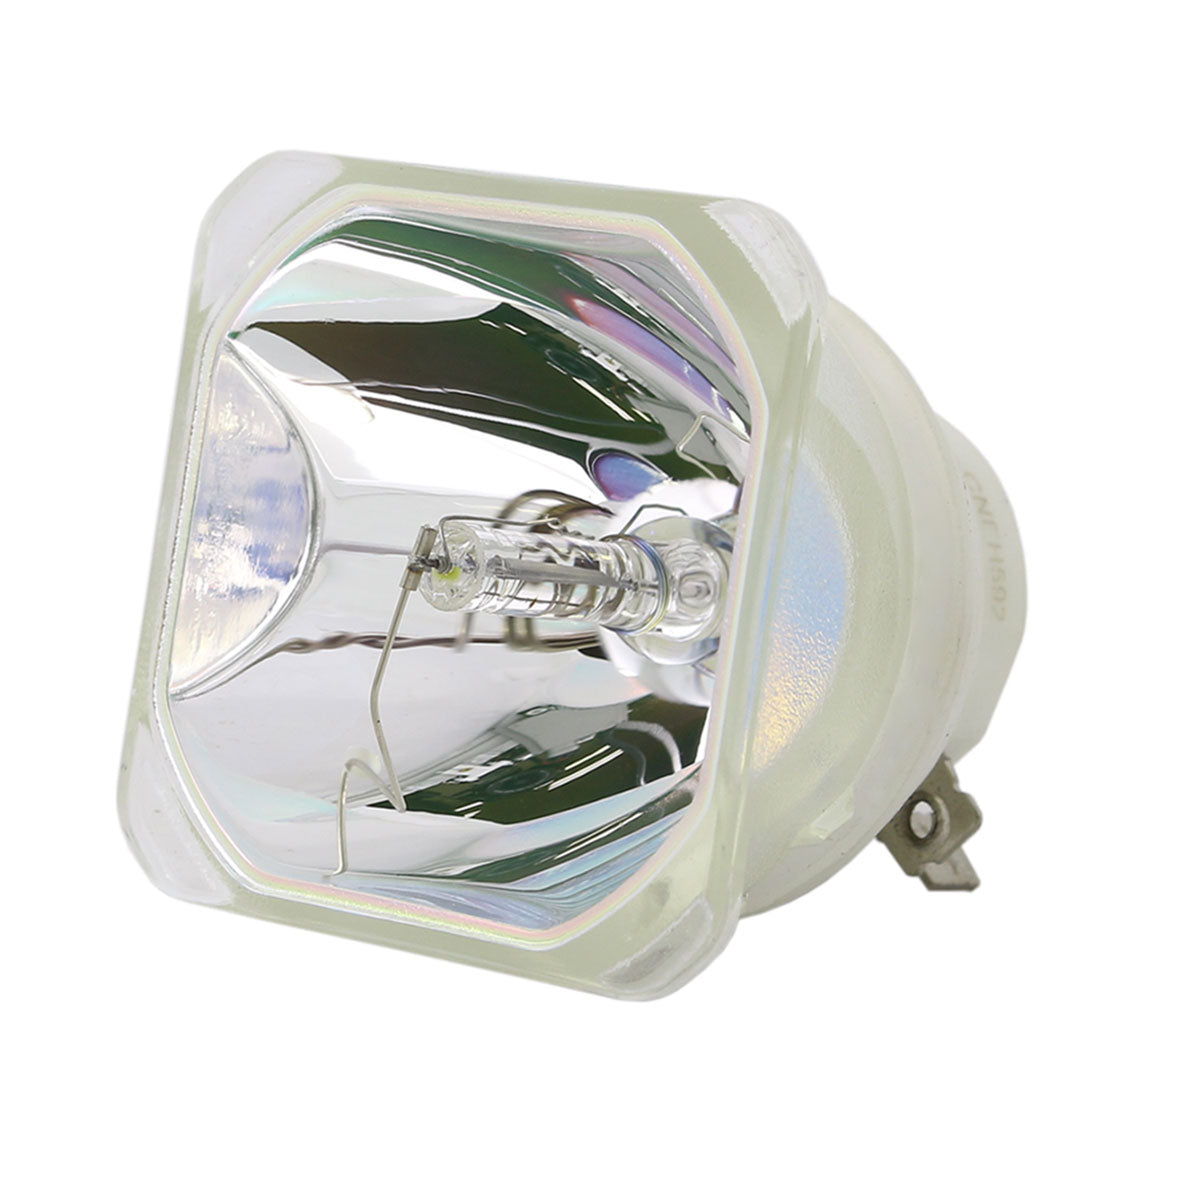 Eiki 23040035 Ushio Projector Bare Lamp